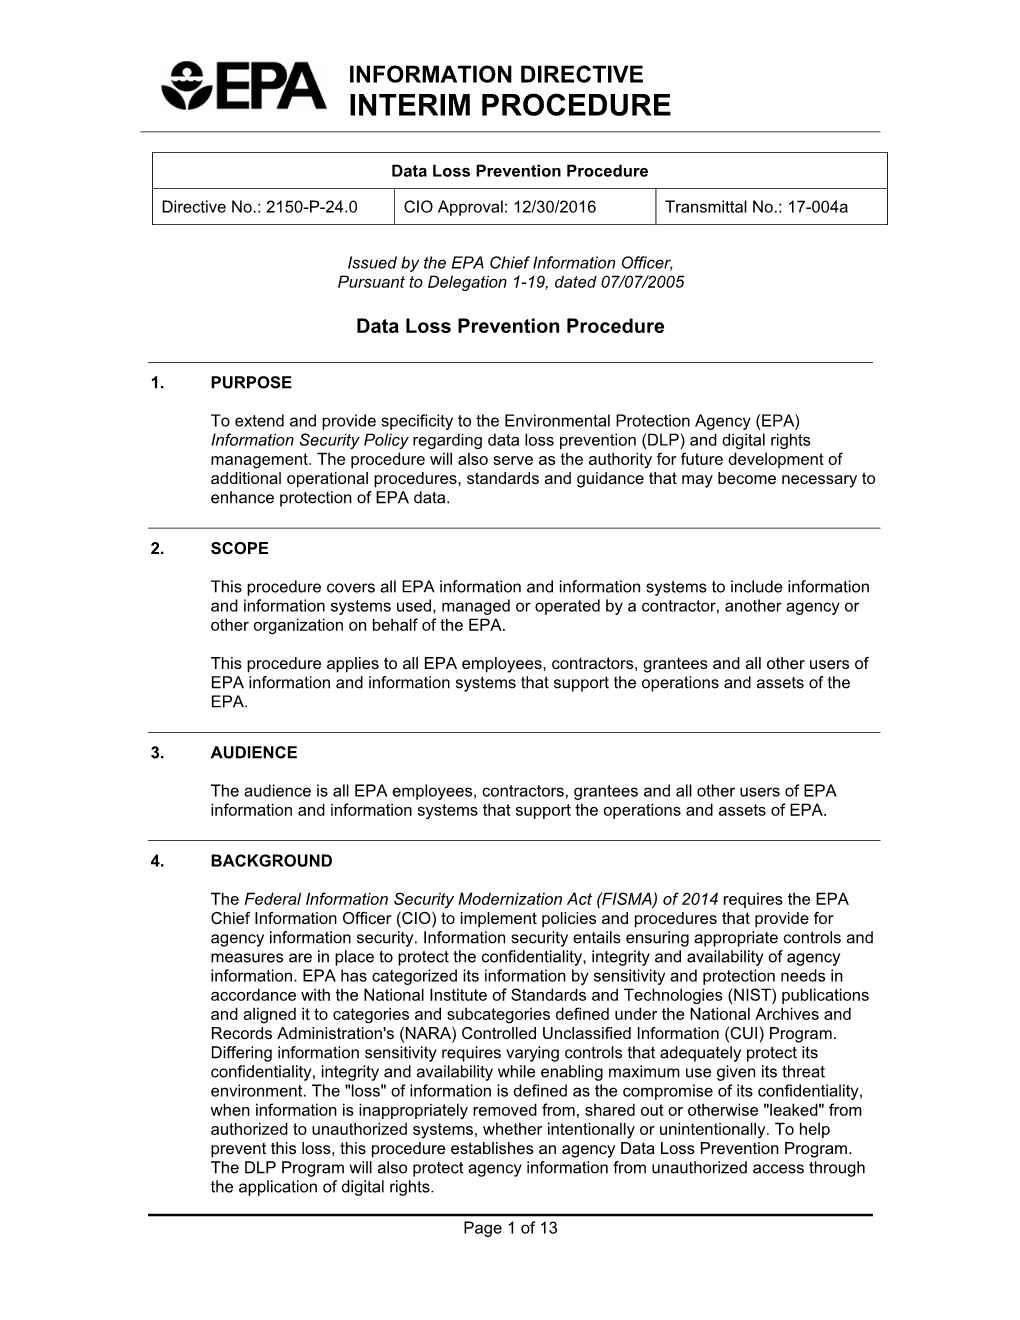 Data Loss Prevention Procedure [Directive No. 2150-P-24.0]